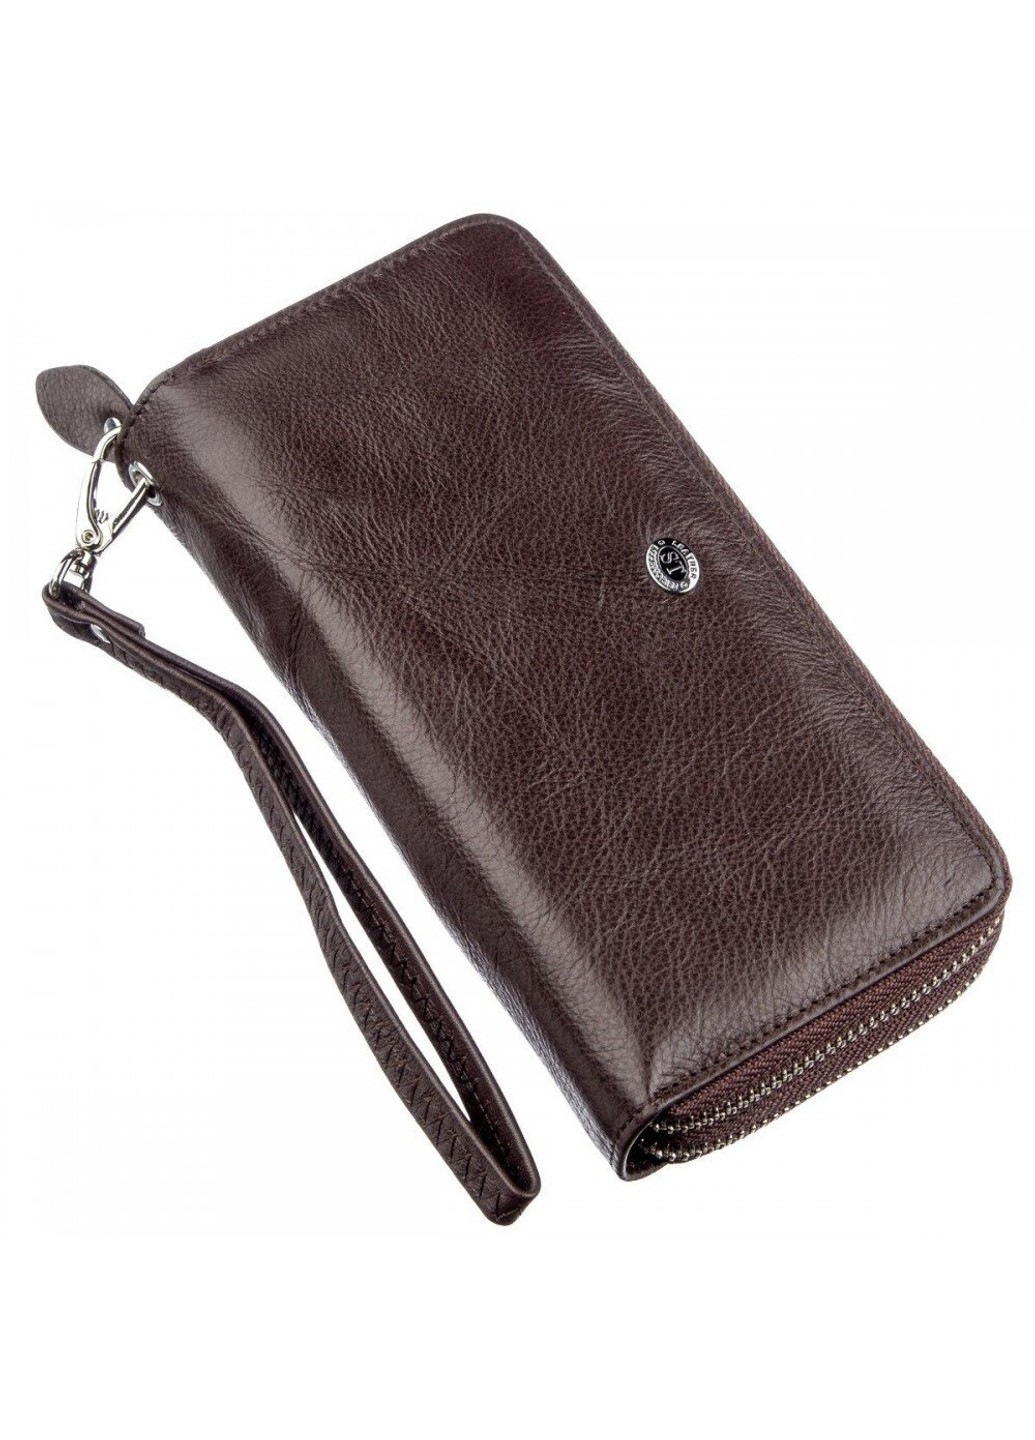 Женский тёмно-коричневый кошелёк из натуральной кожи ST Leather 18867 Темно-коричневый ST Leather Accessories (262453741)